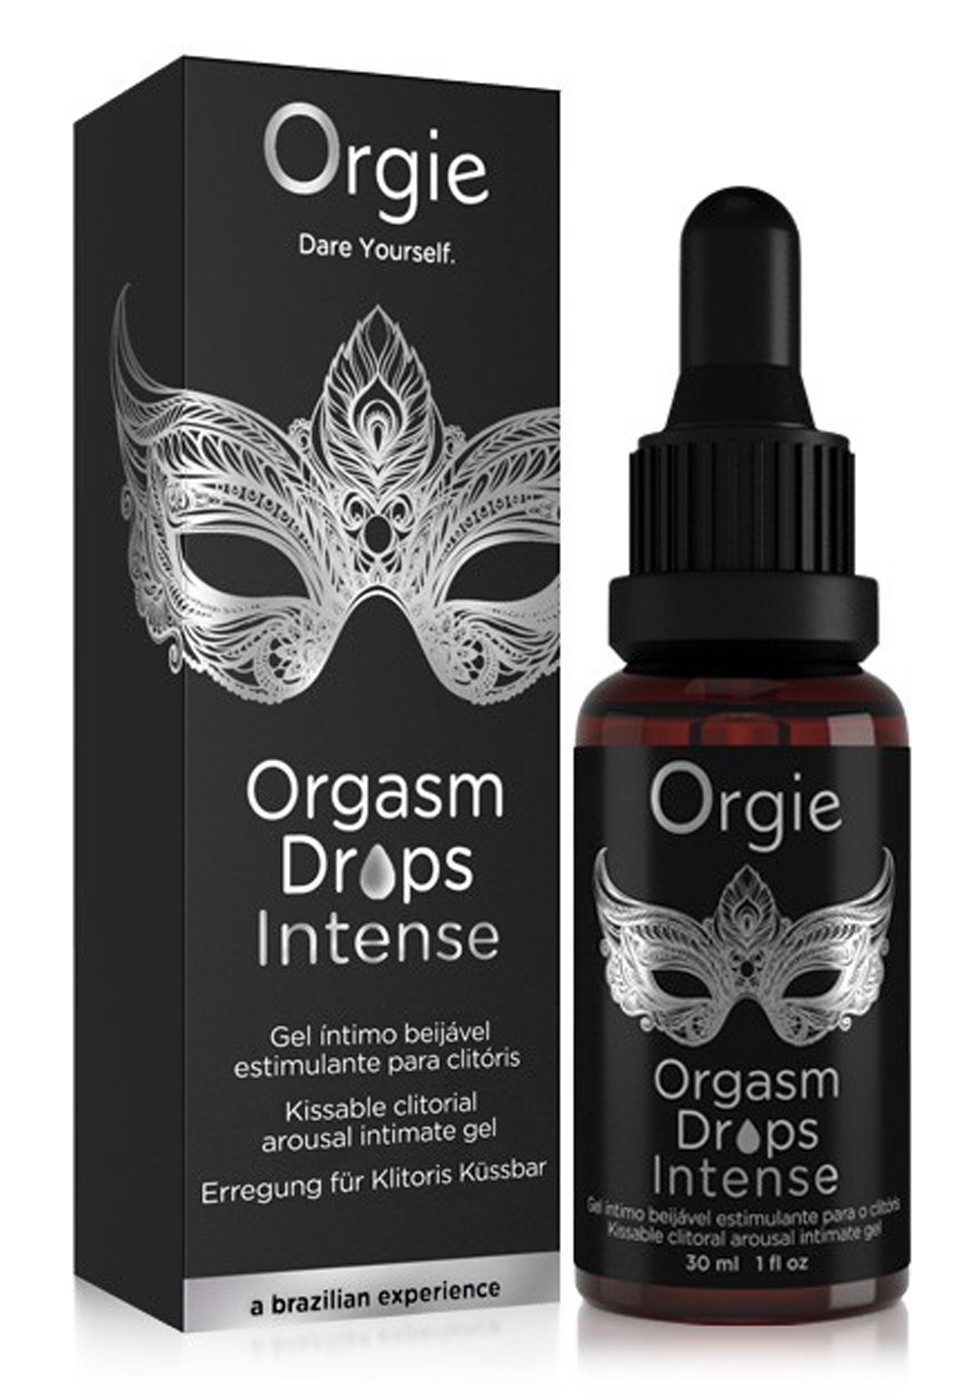 Orgie Stimulationstropfen Orgasm Drops - Intense